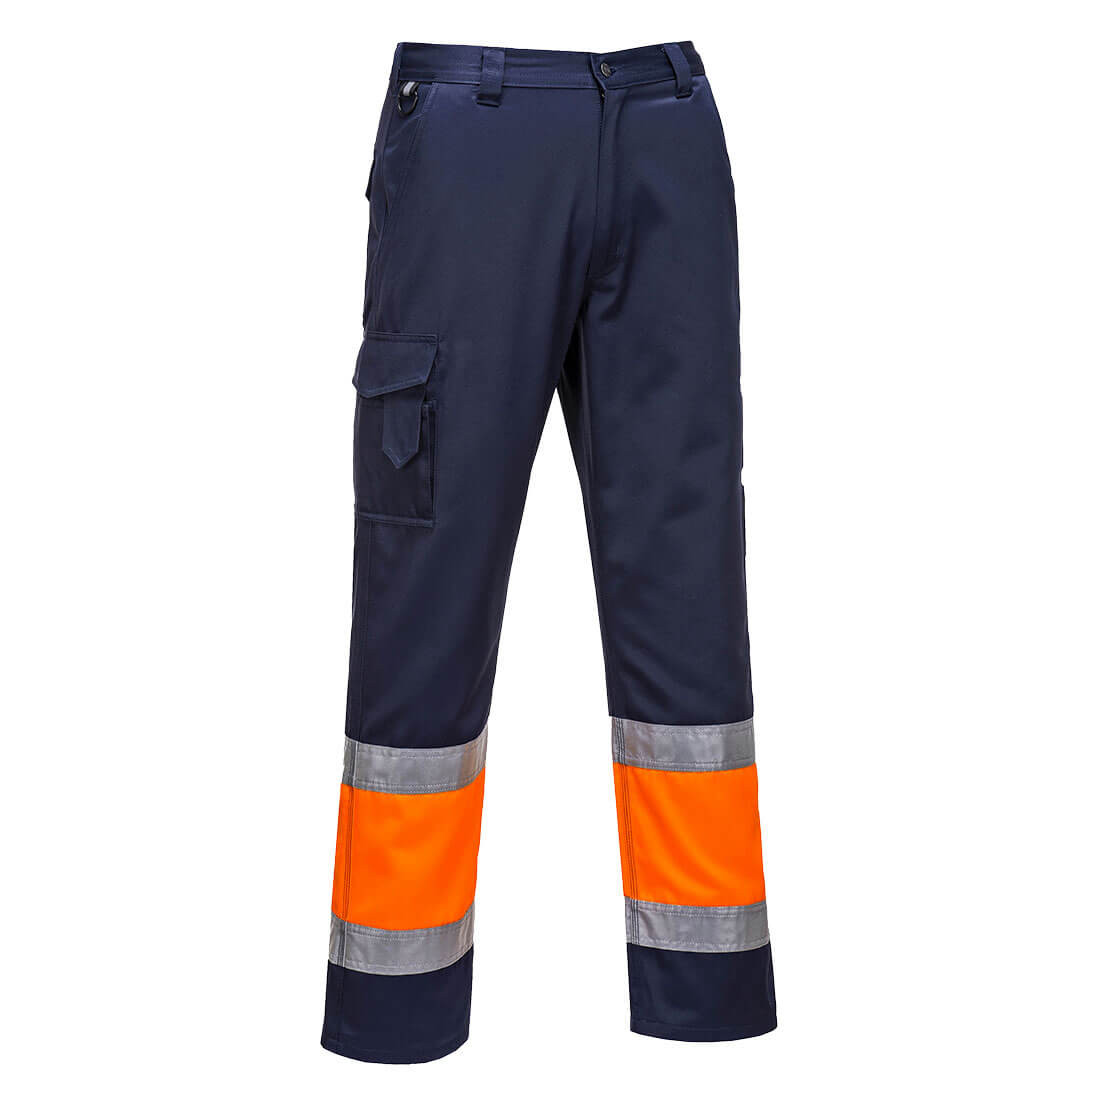 Pantalón ligero Combat bicolor de alta visibilidad - Ropa de protección